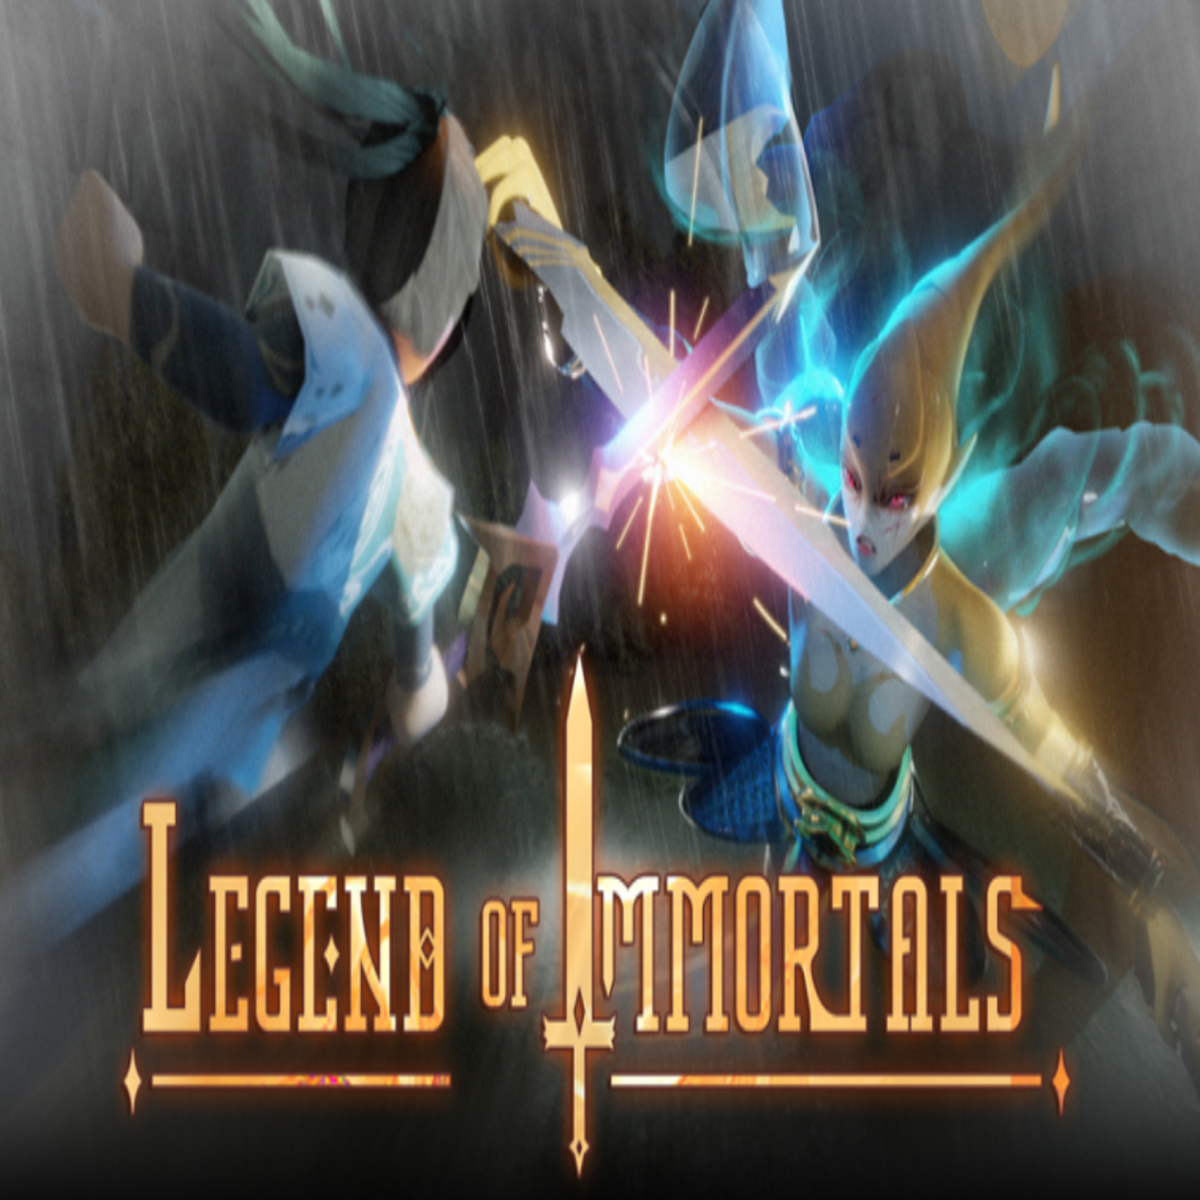 Legend of Immortals Codes Wiki Roblox[December 2023] - MrGuider